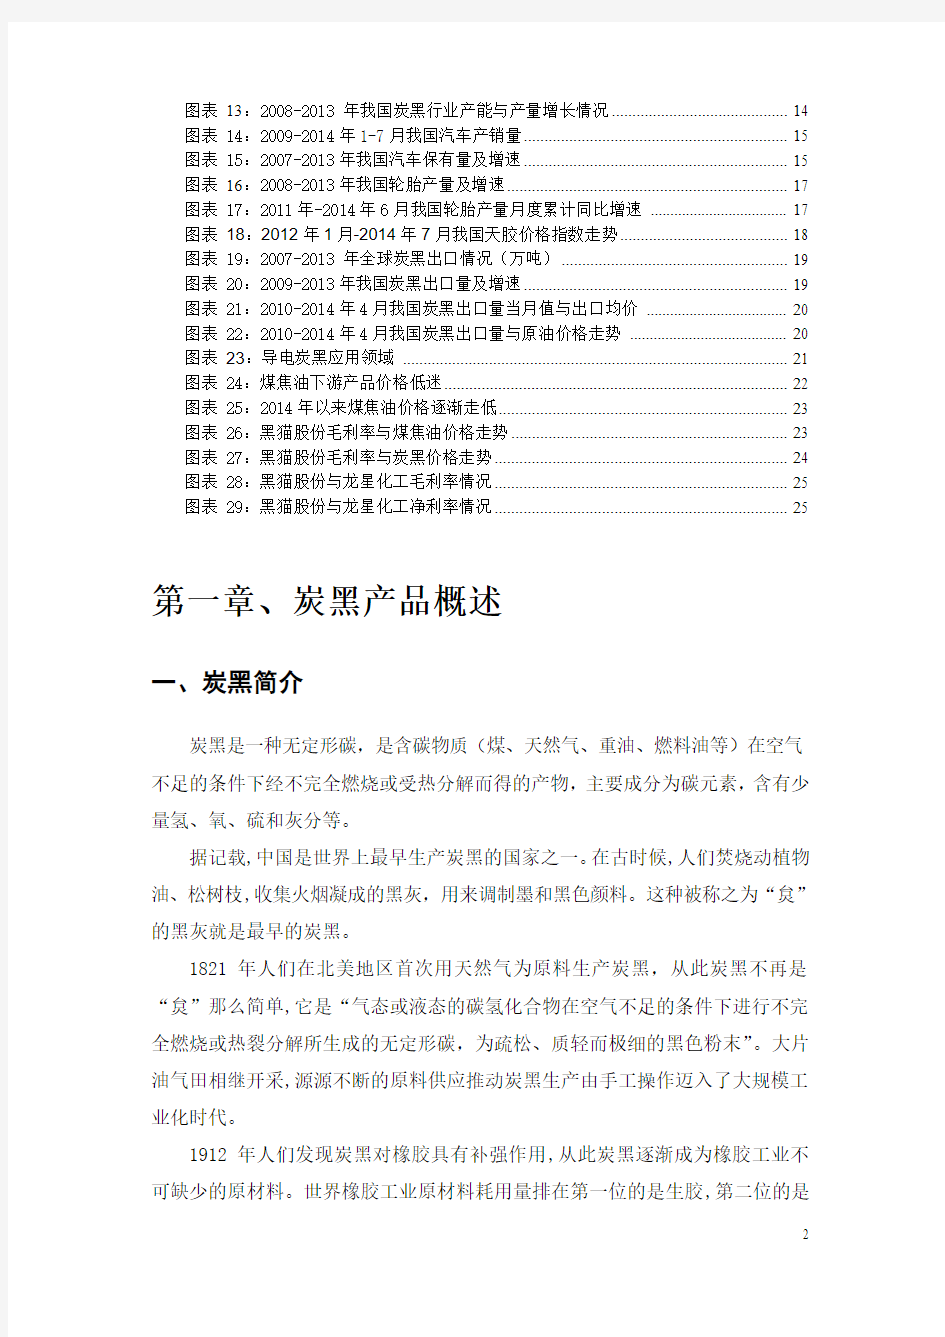 2014年中国炭黑市场供需状况报告